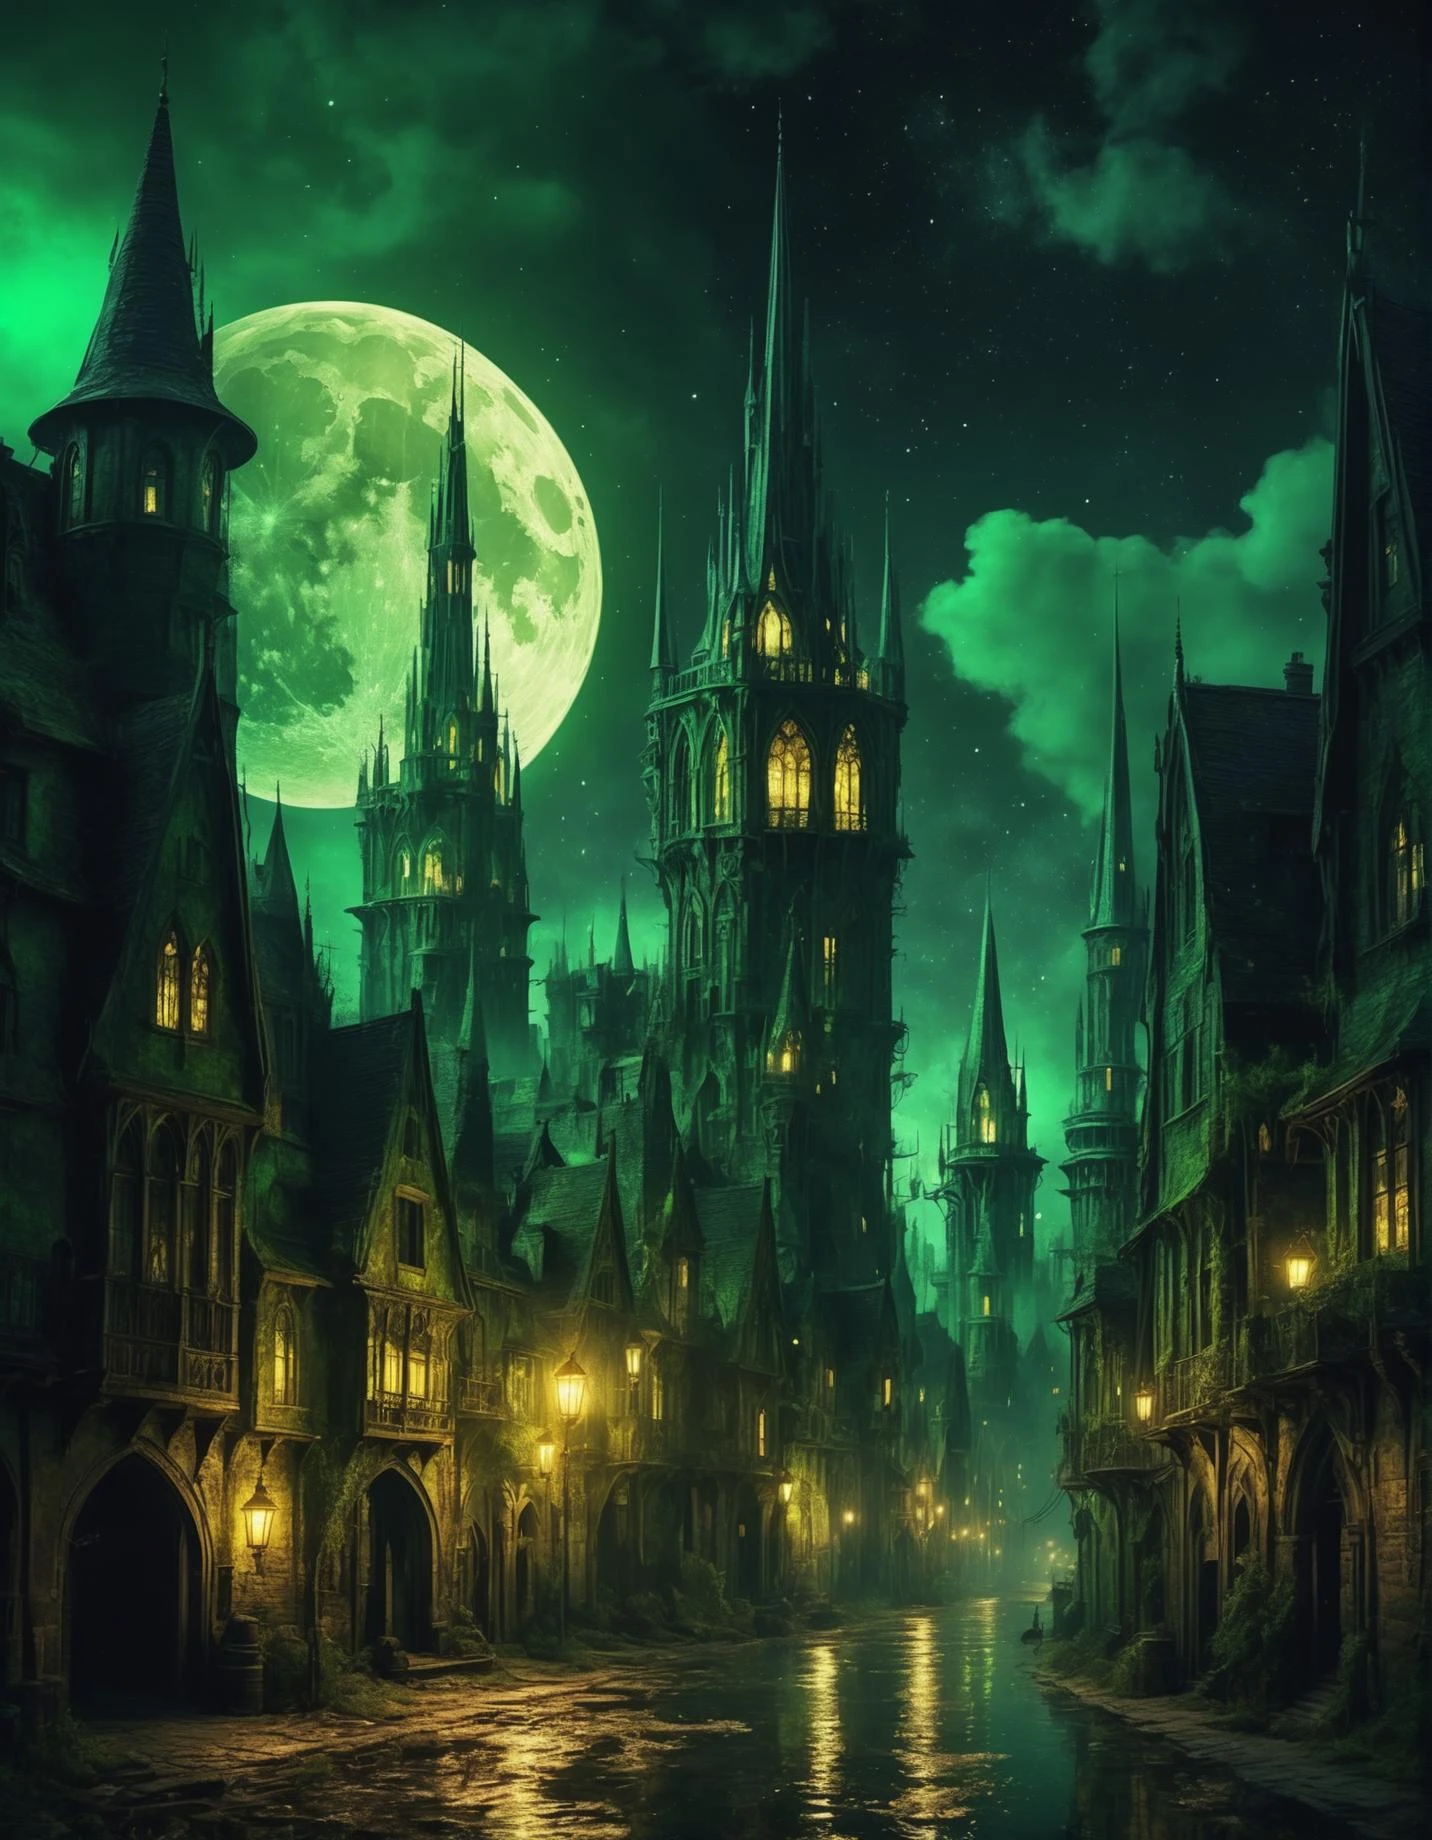 中世のハイファンタジー、塔、沼地、都市、魔法の通り、金色、暗い、超リアリズム、澄んだ夜空、月なし、4Kデジタルアート、高精細, 傑作  [ゴシック] [鮮明な] [緑の煙のような光] 神秘的な